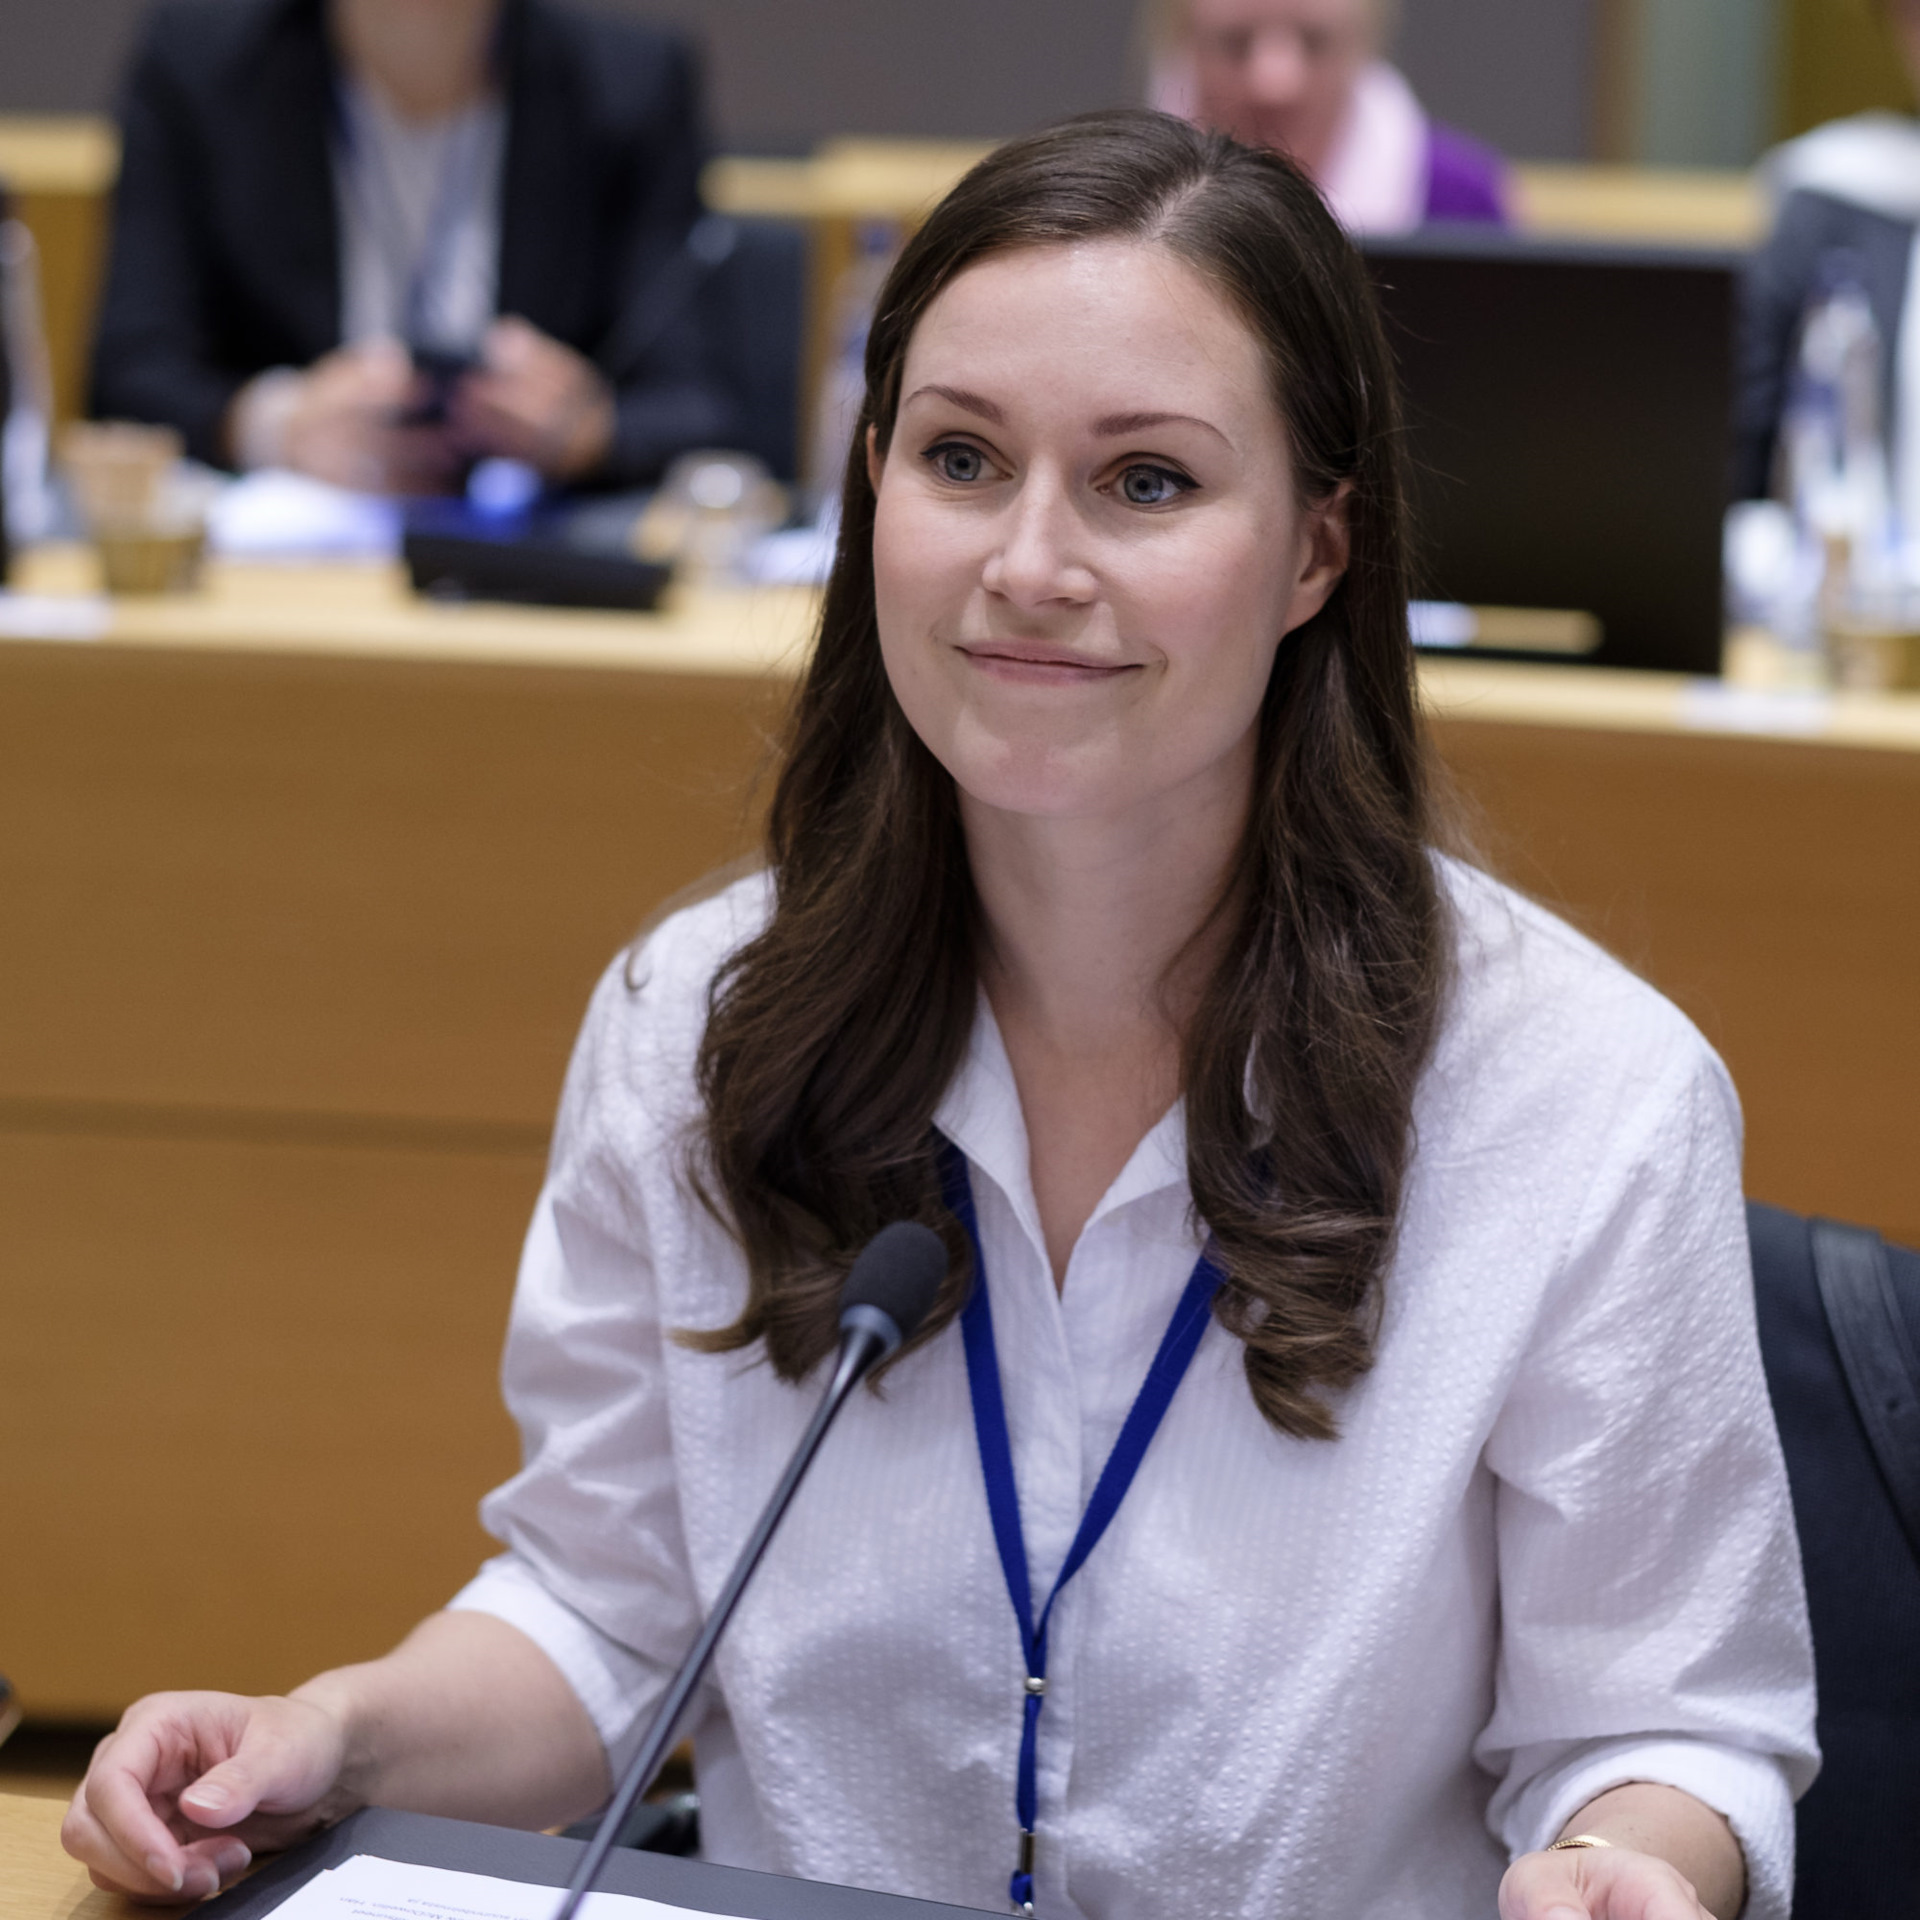 Женщина с идеальным вкусом: Премьер министр Финляндии удивляет образом в купальнике